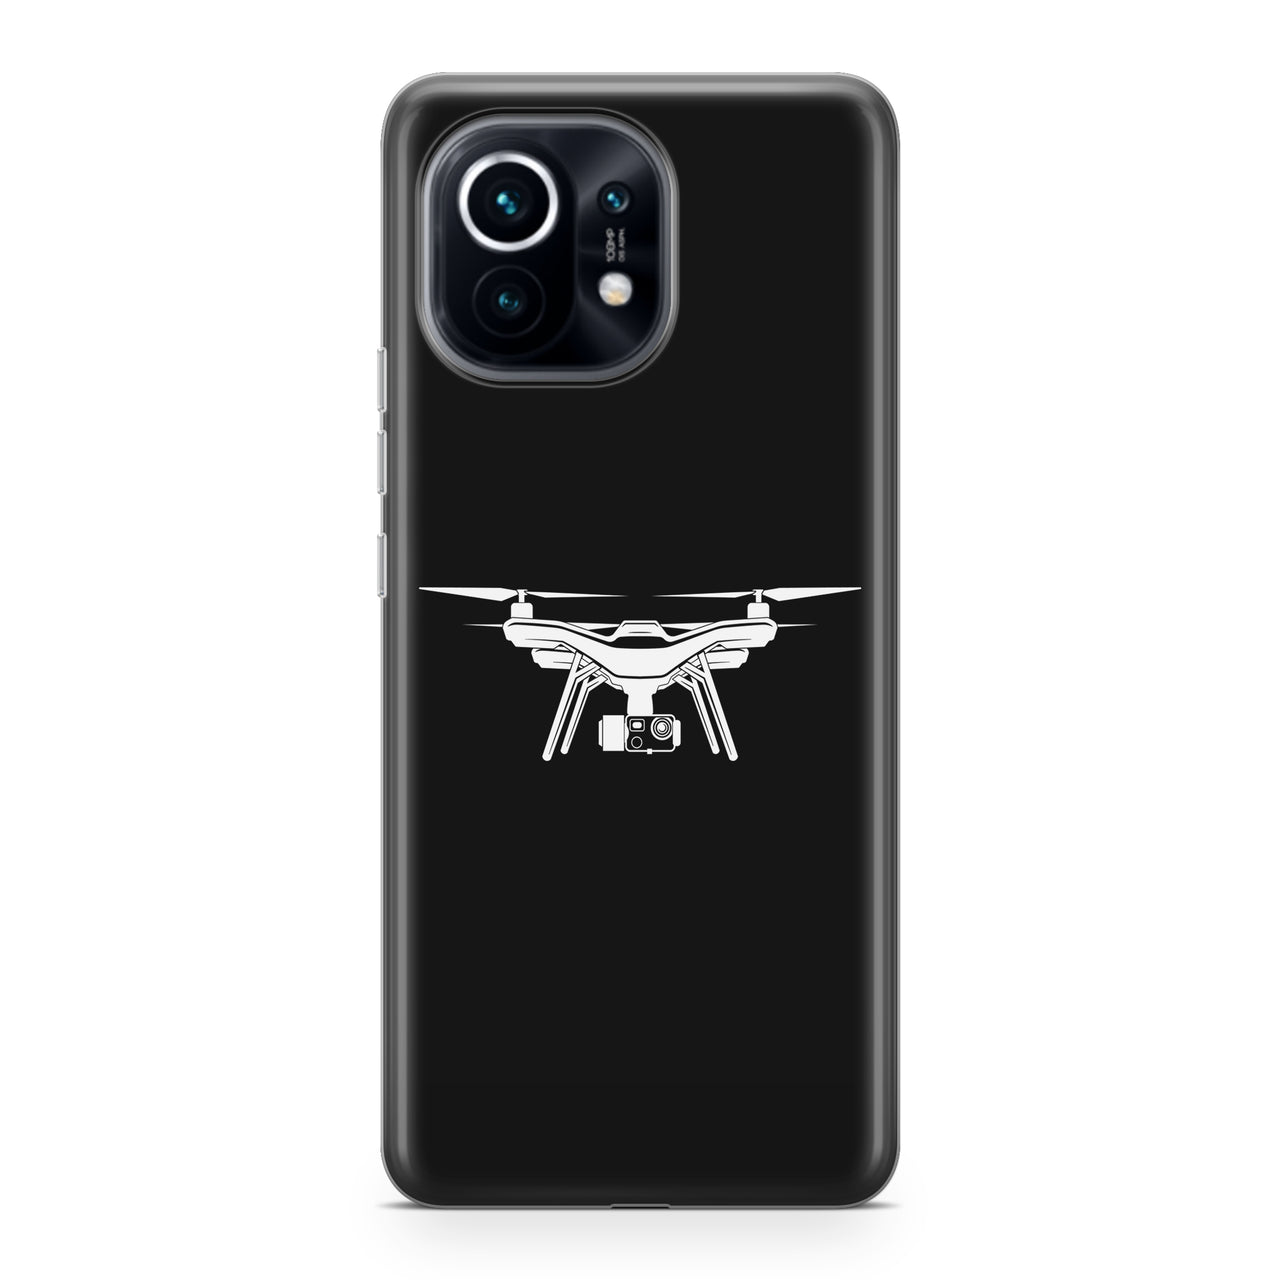 Drone Silhouette Designed Xiaomi Cases